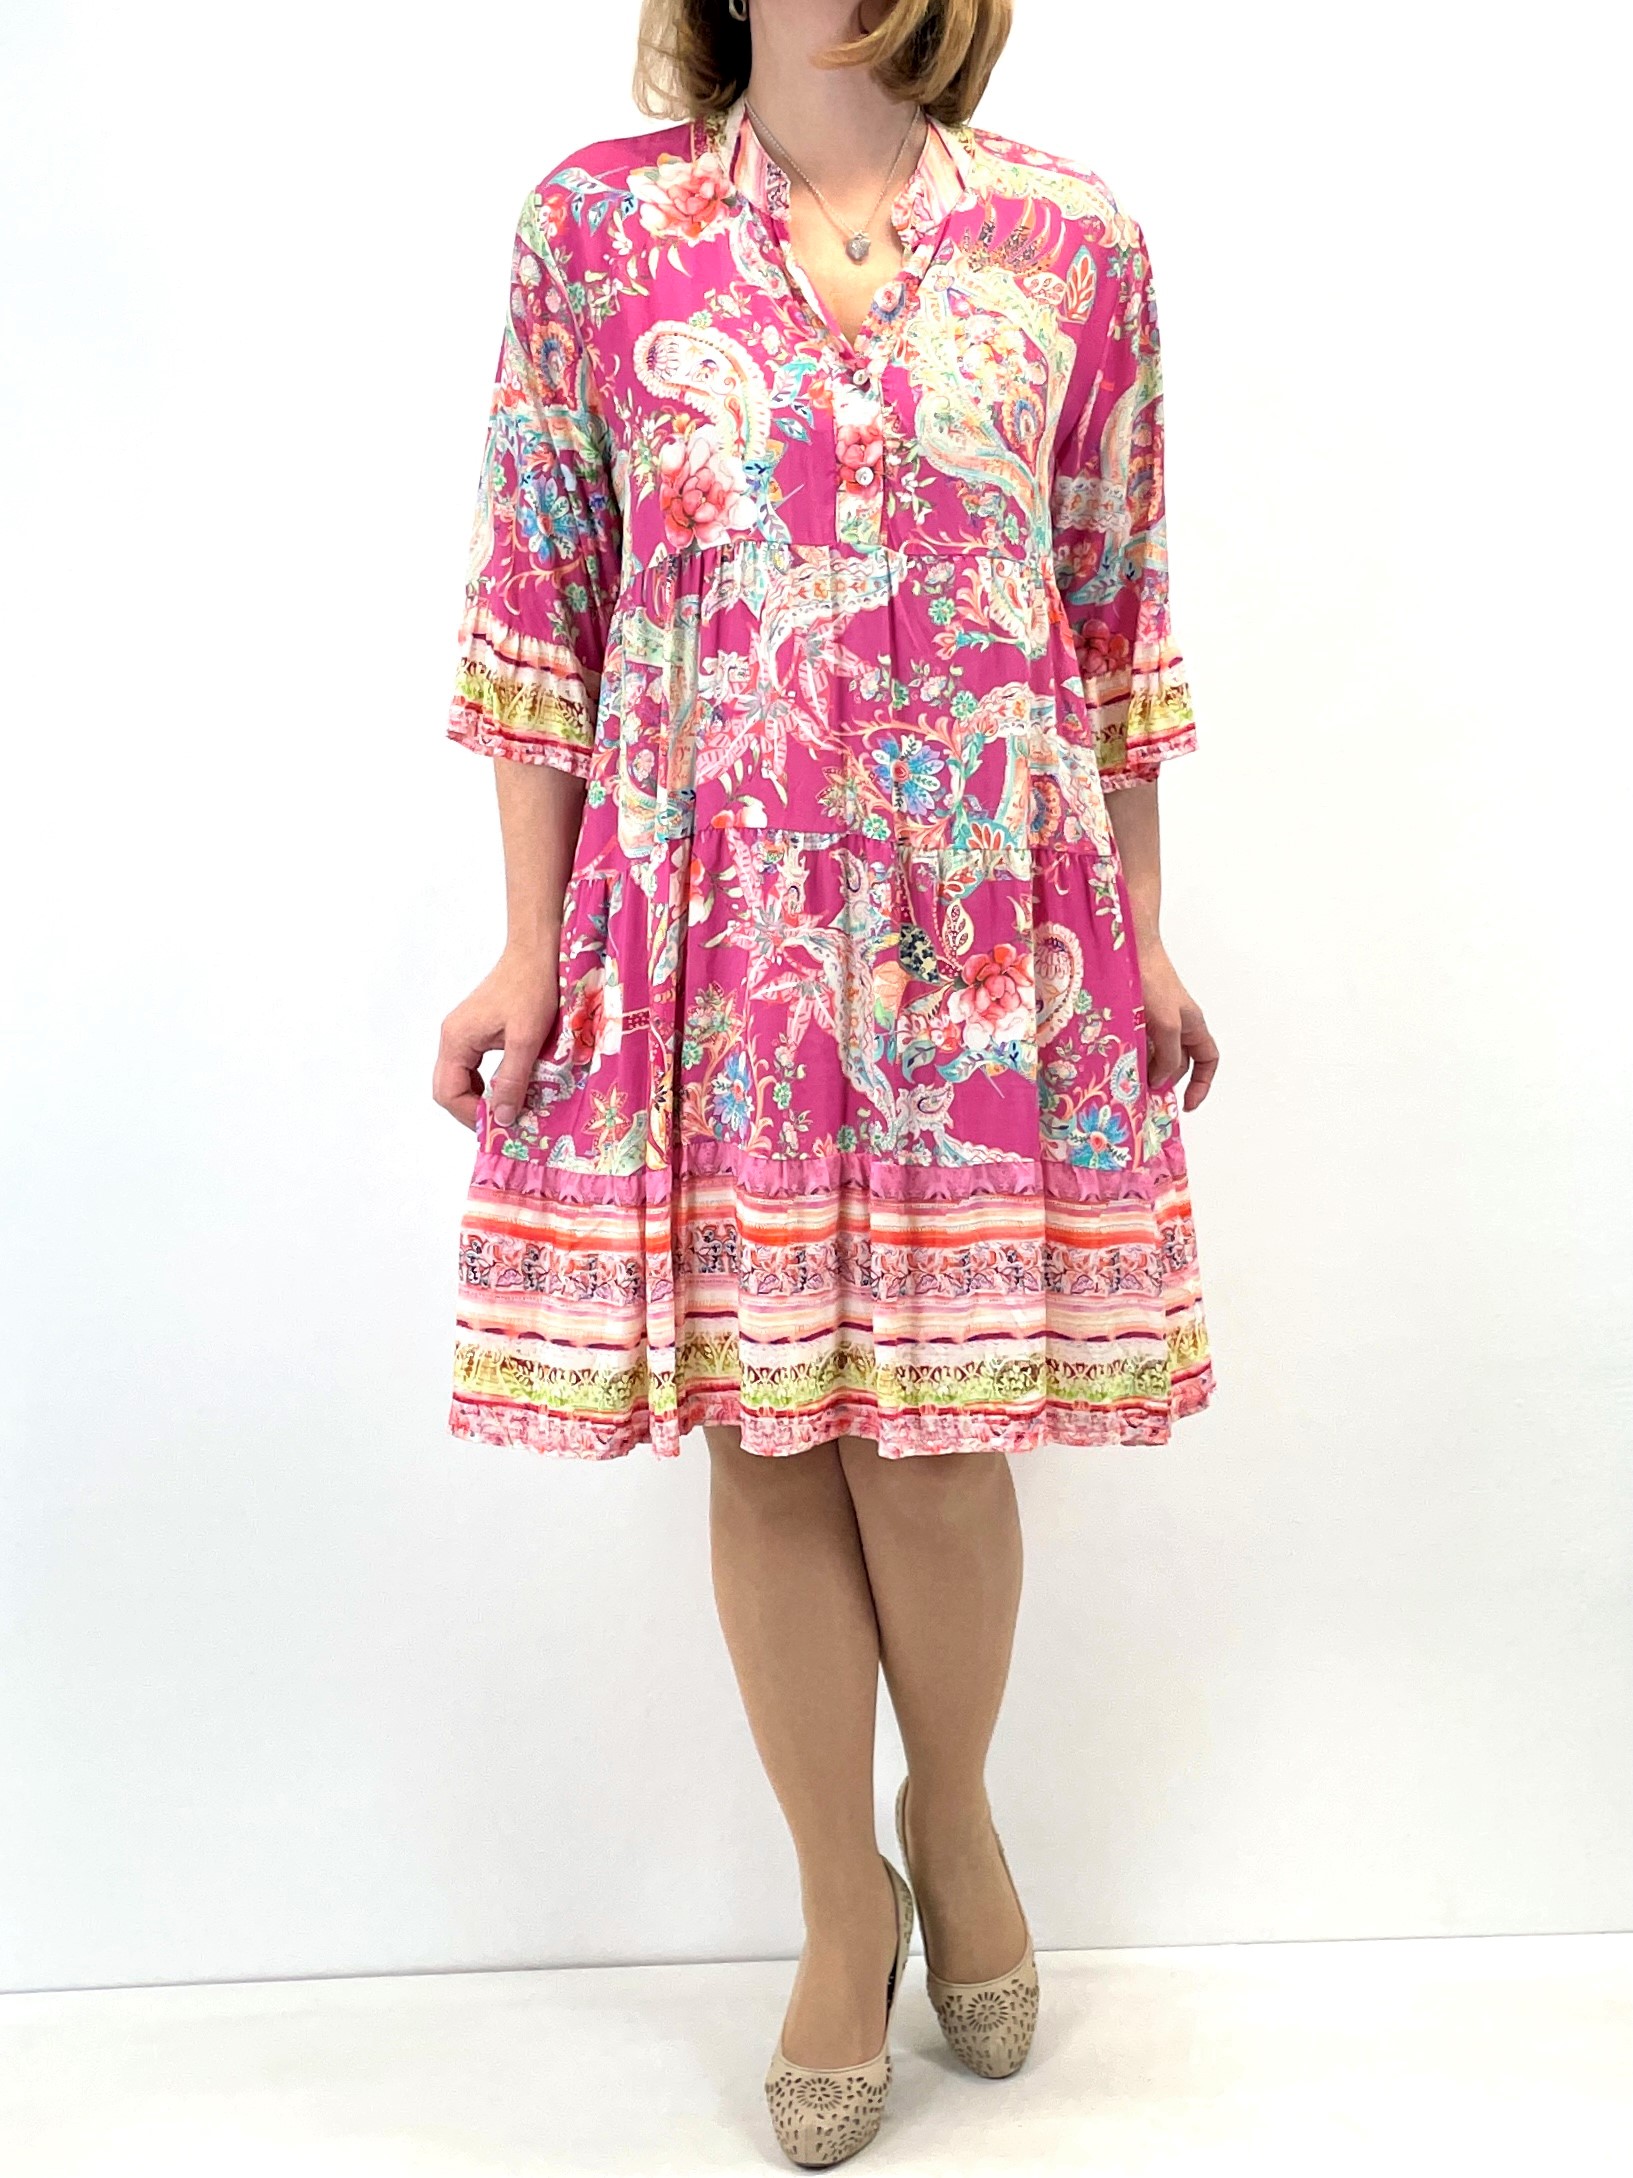 Boho-Kleid in Paisley und Blumen Muster 